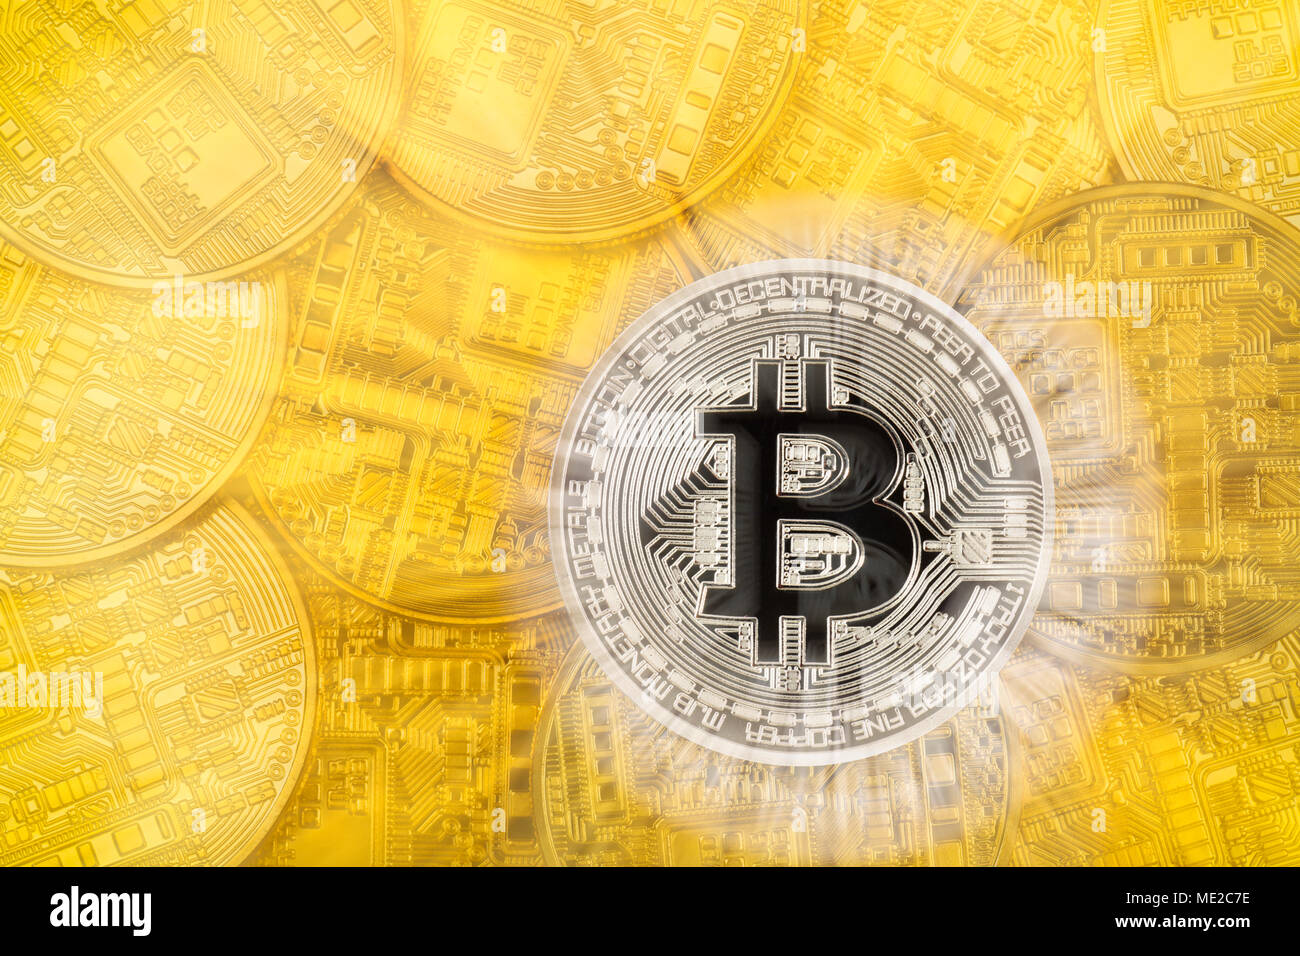 Image symbole de l'action de la turbulence de la monnaie numérique, de l'or monnaie physique Bitcoin Banque D'Images